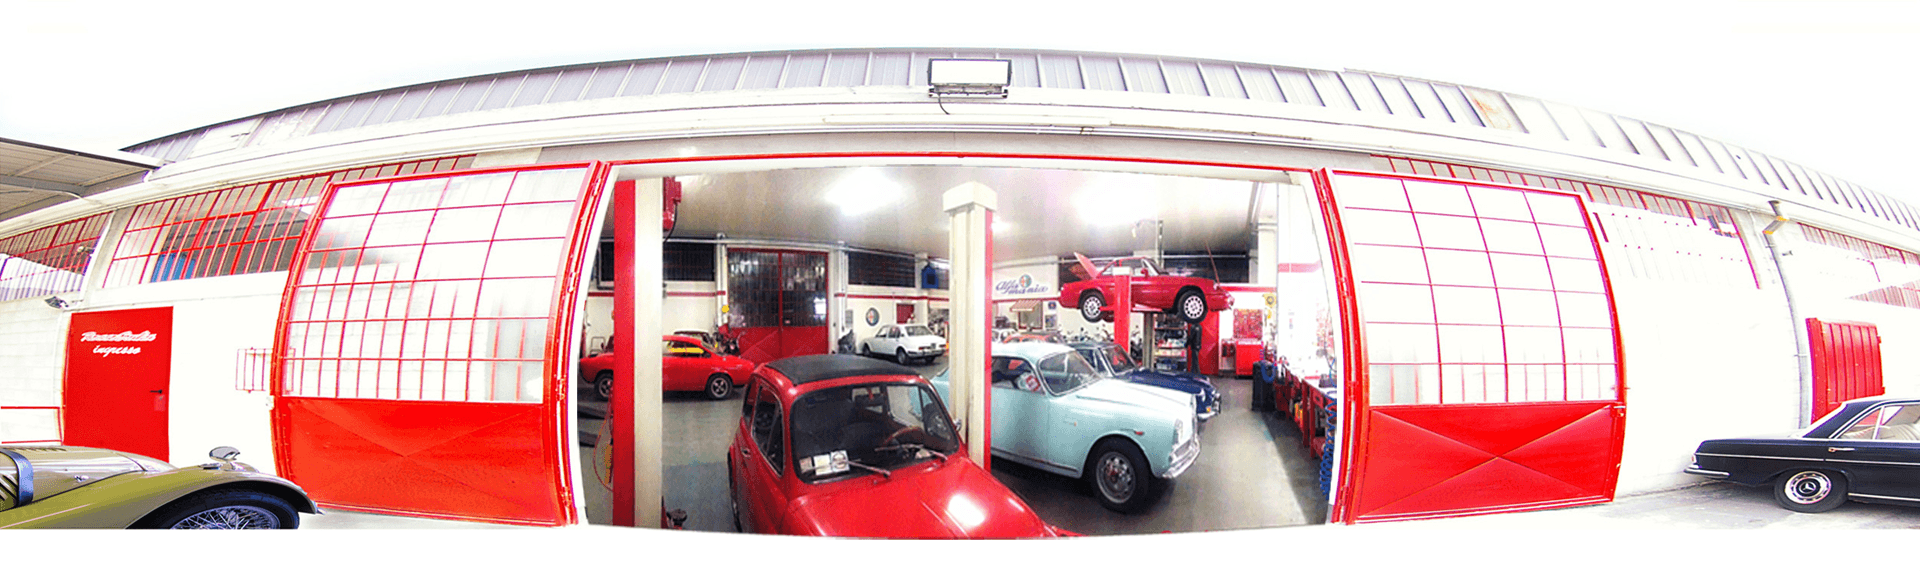 garage rosso italia